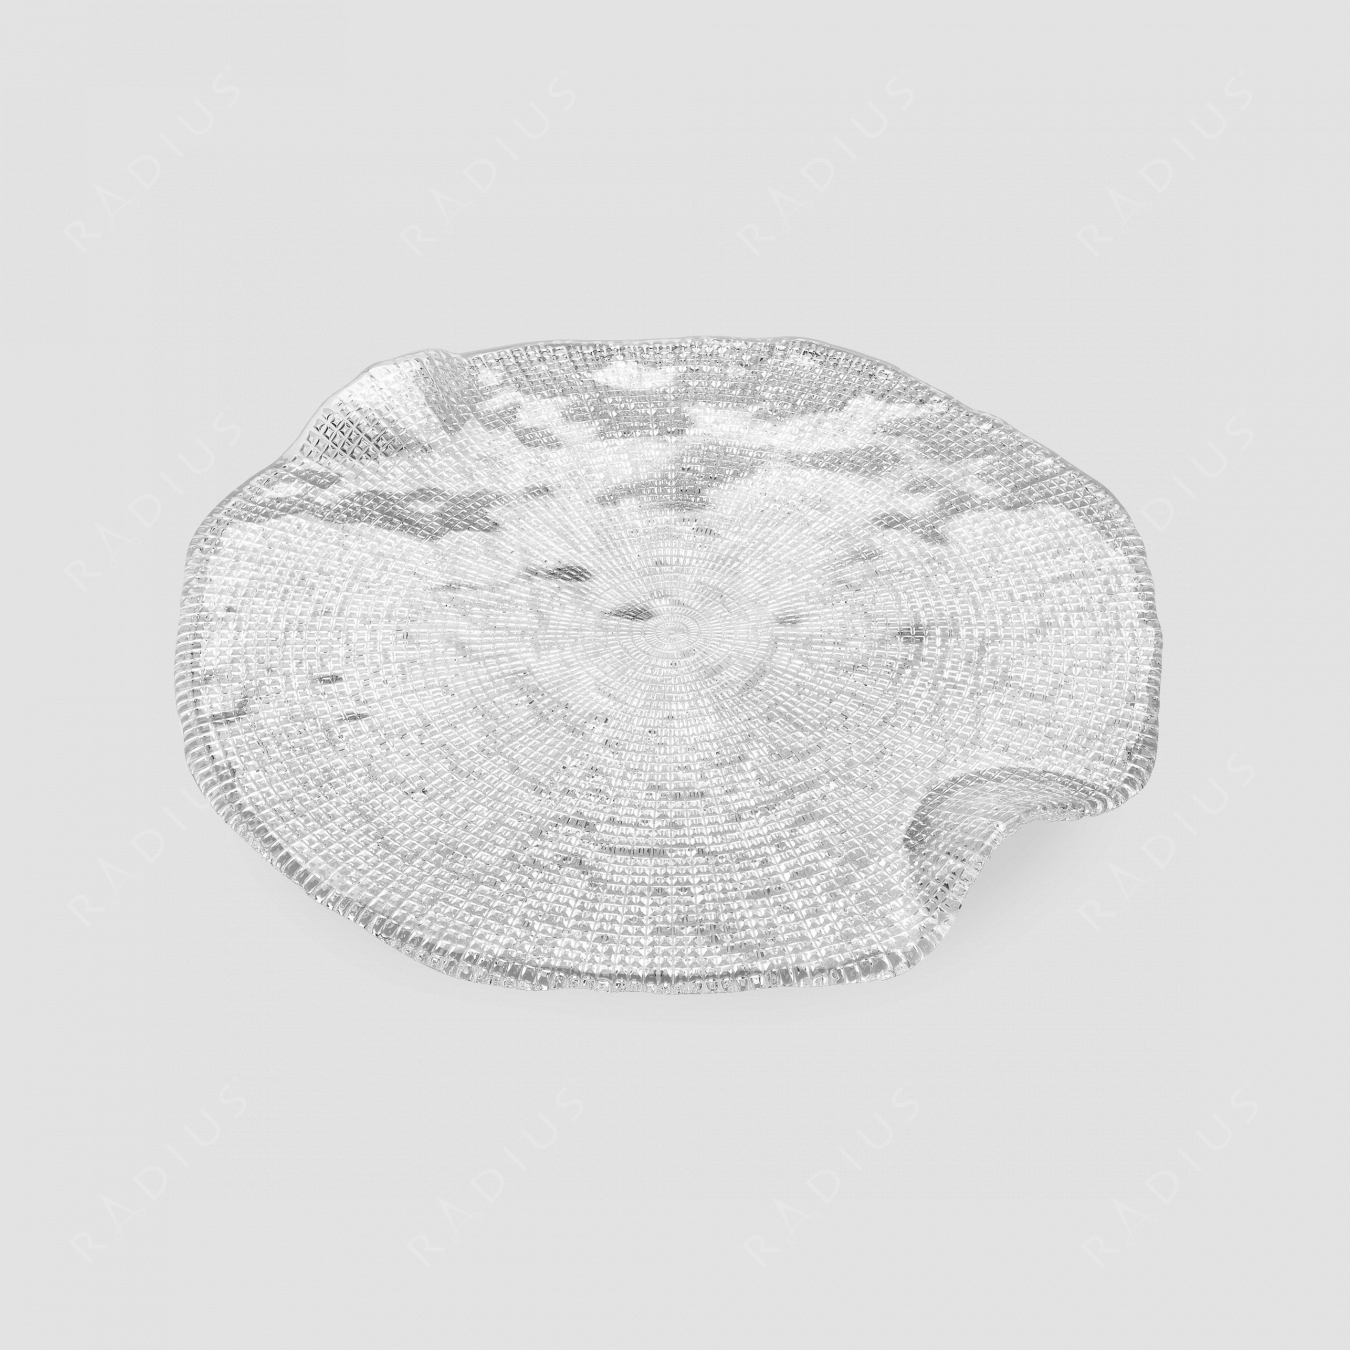 Блюдо круглое для сыра, диаметр: 32 см, высота: 2,5 см, материал: стекло, серия Diamante, IVV (Italy), Италия